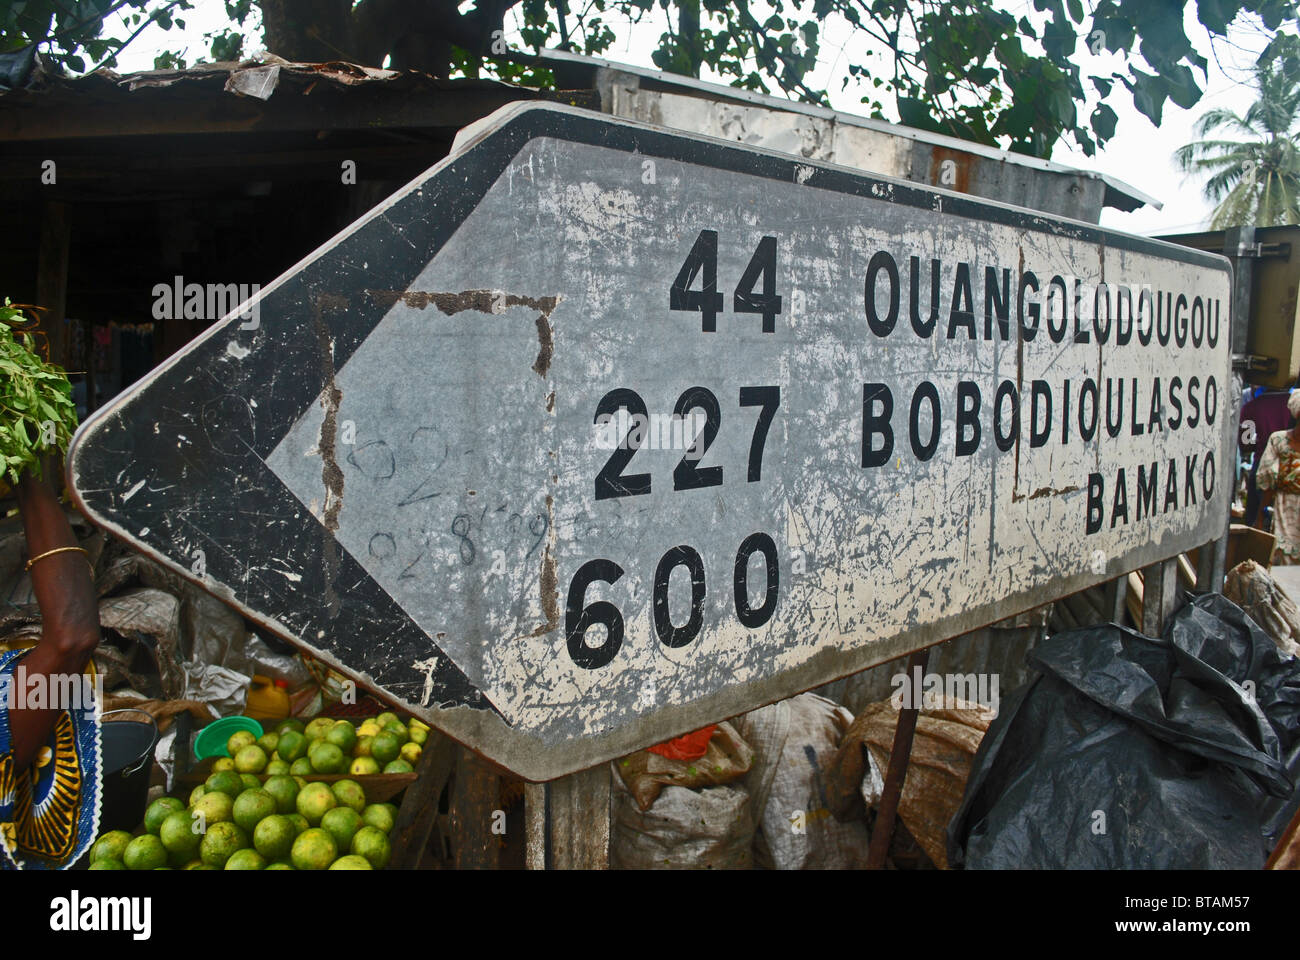 Segno posto a Ouangolodougou, Bobo Dioulasso e Bamako, nella città di Ferkessedougou nel nord della Costa d Avorio, Africa occidentale Foto Stock